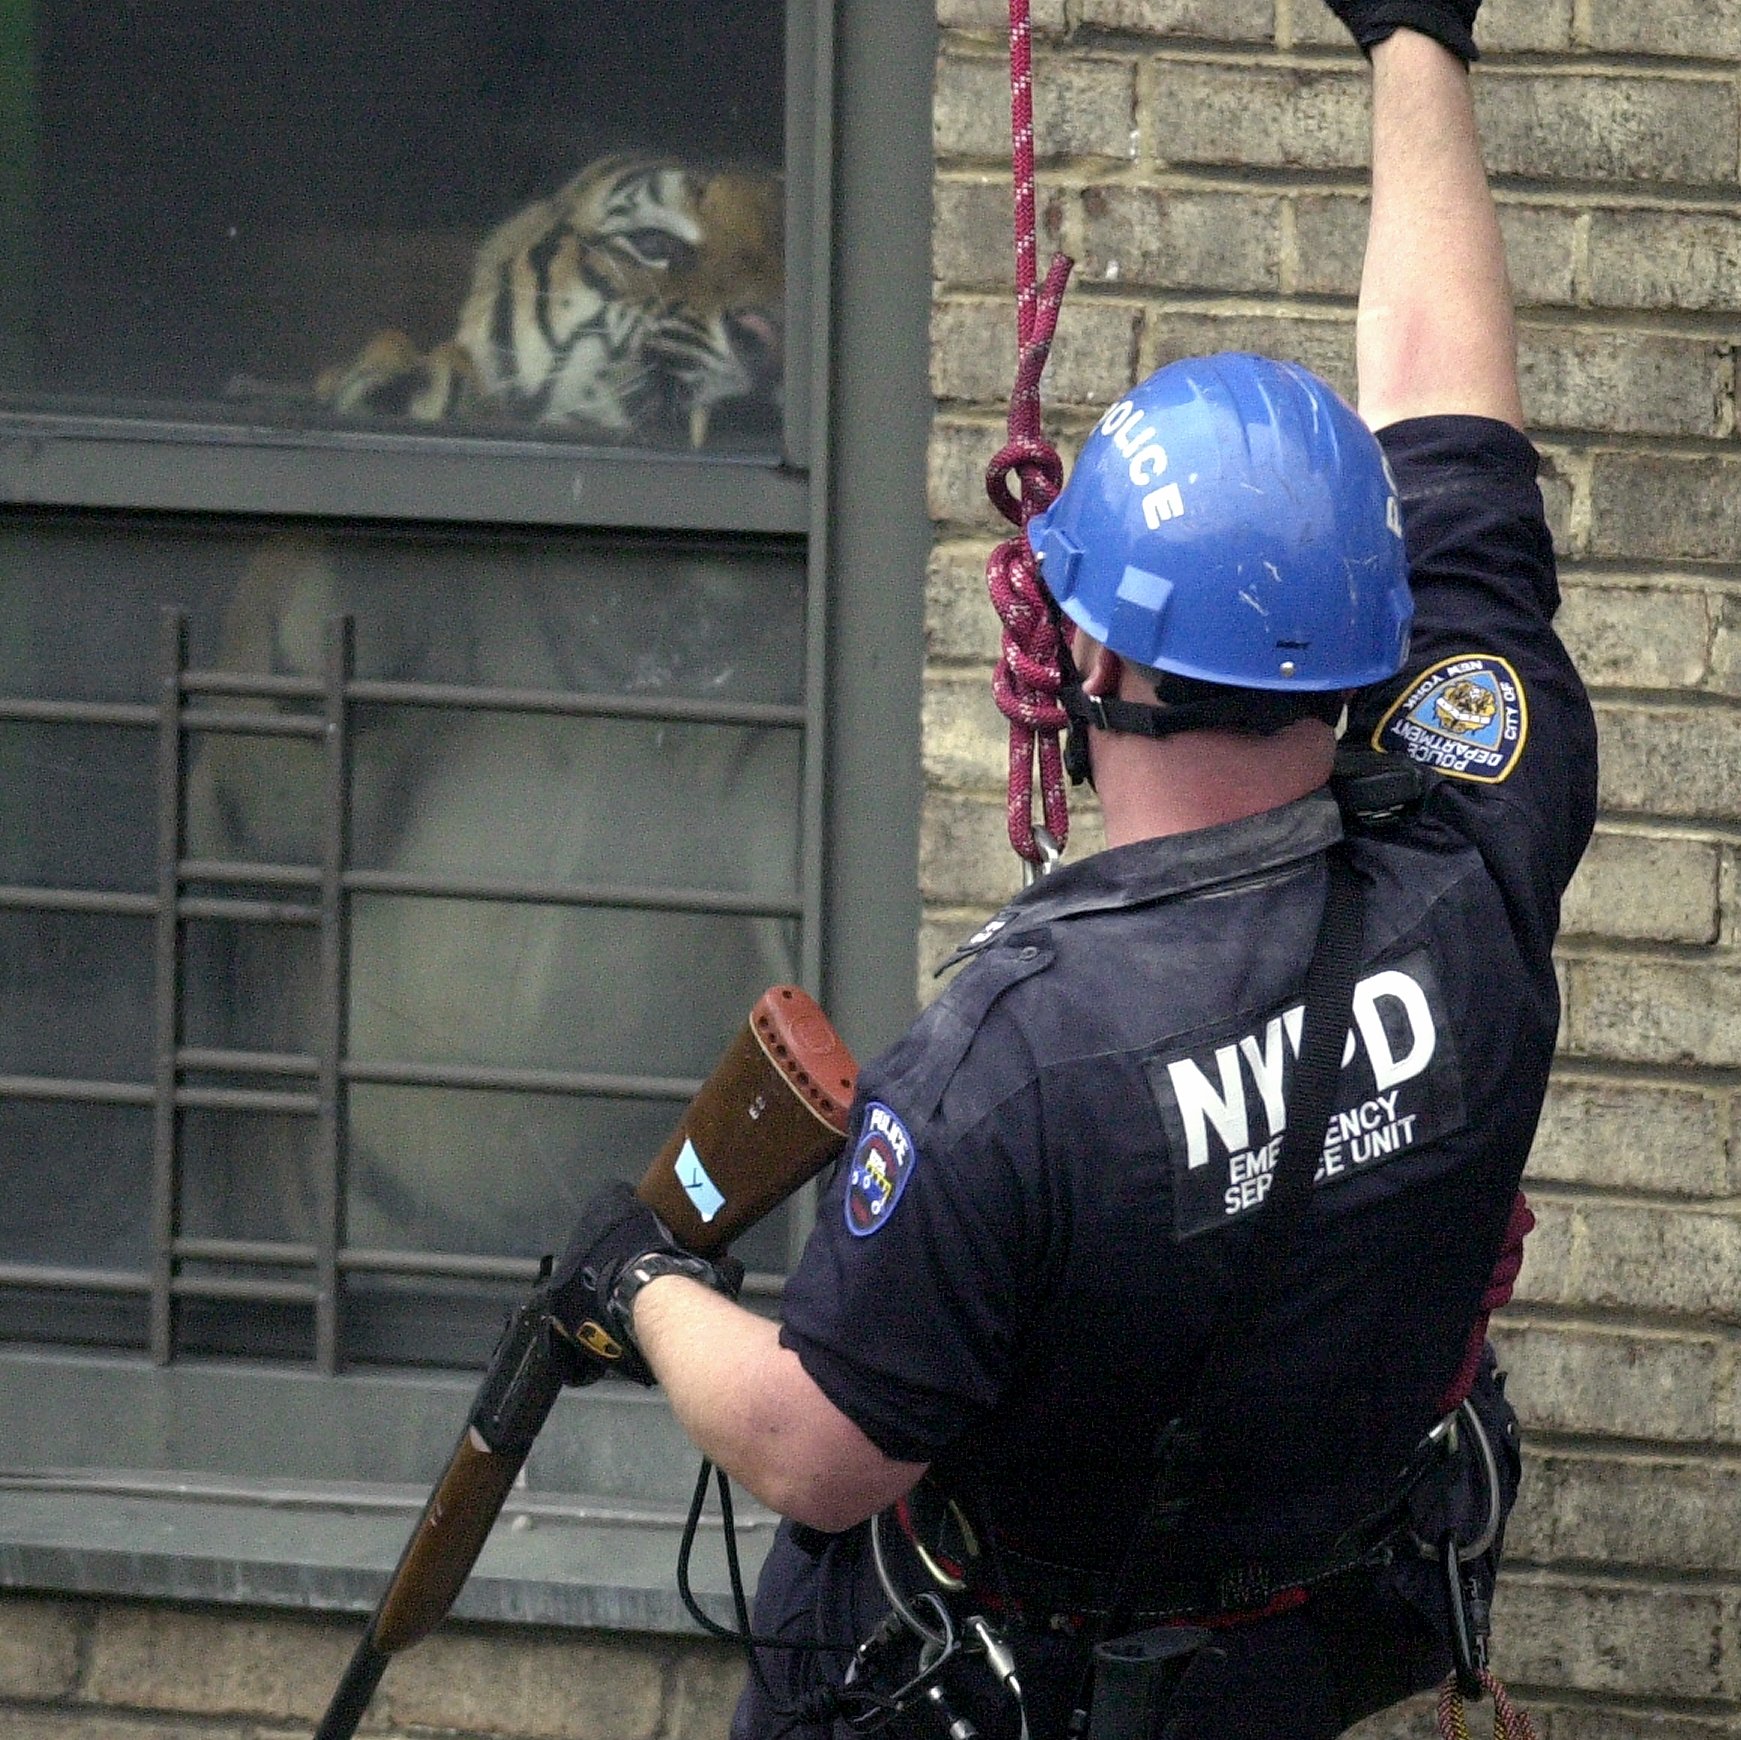 7 Detalles del “Rescate Imposible” de un Tigre en un apartamento de Nueva York